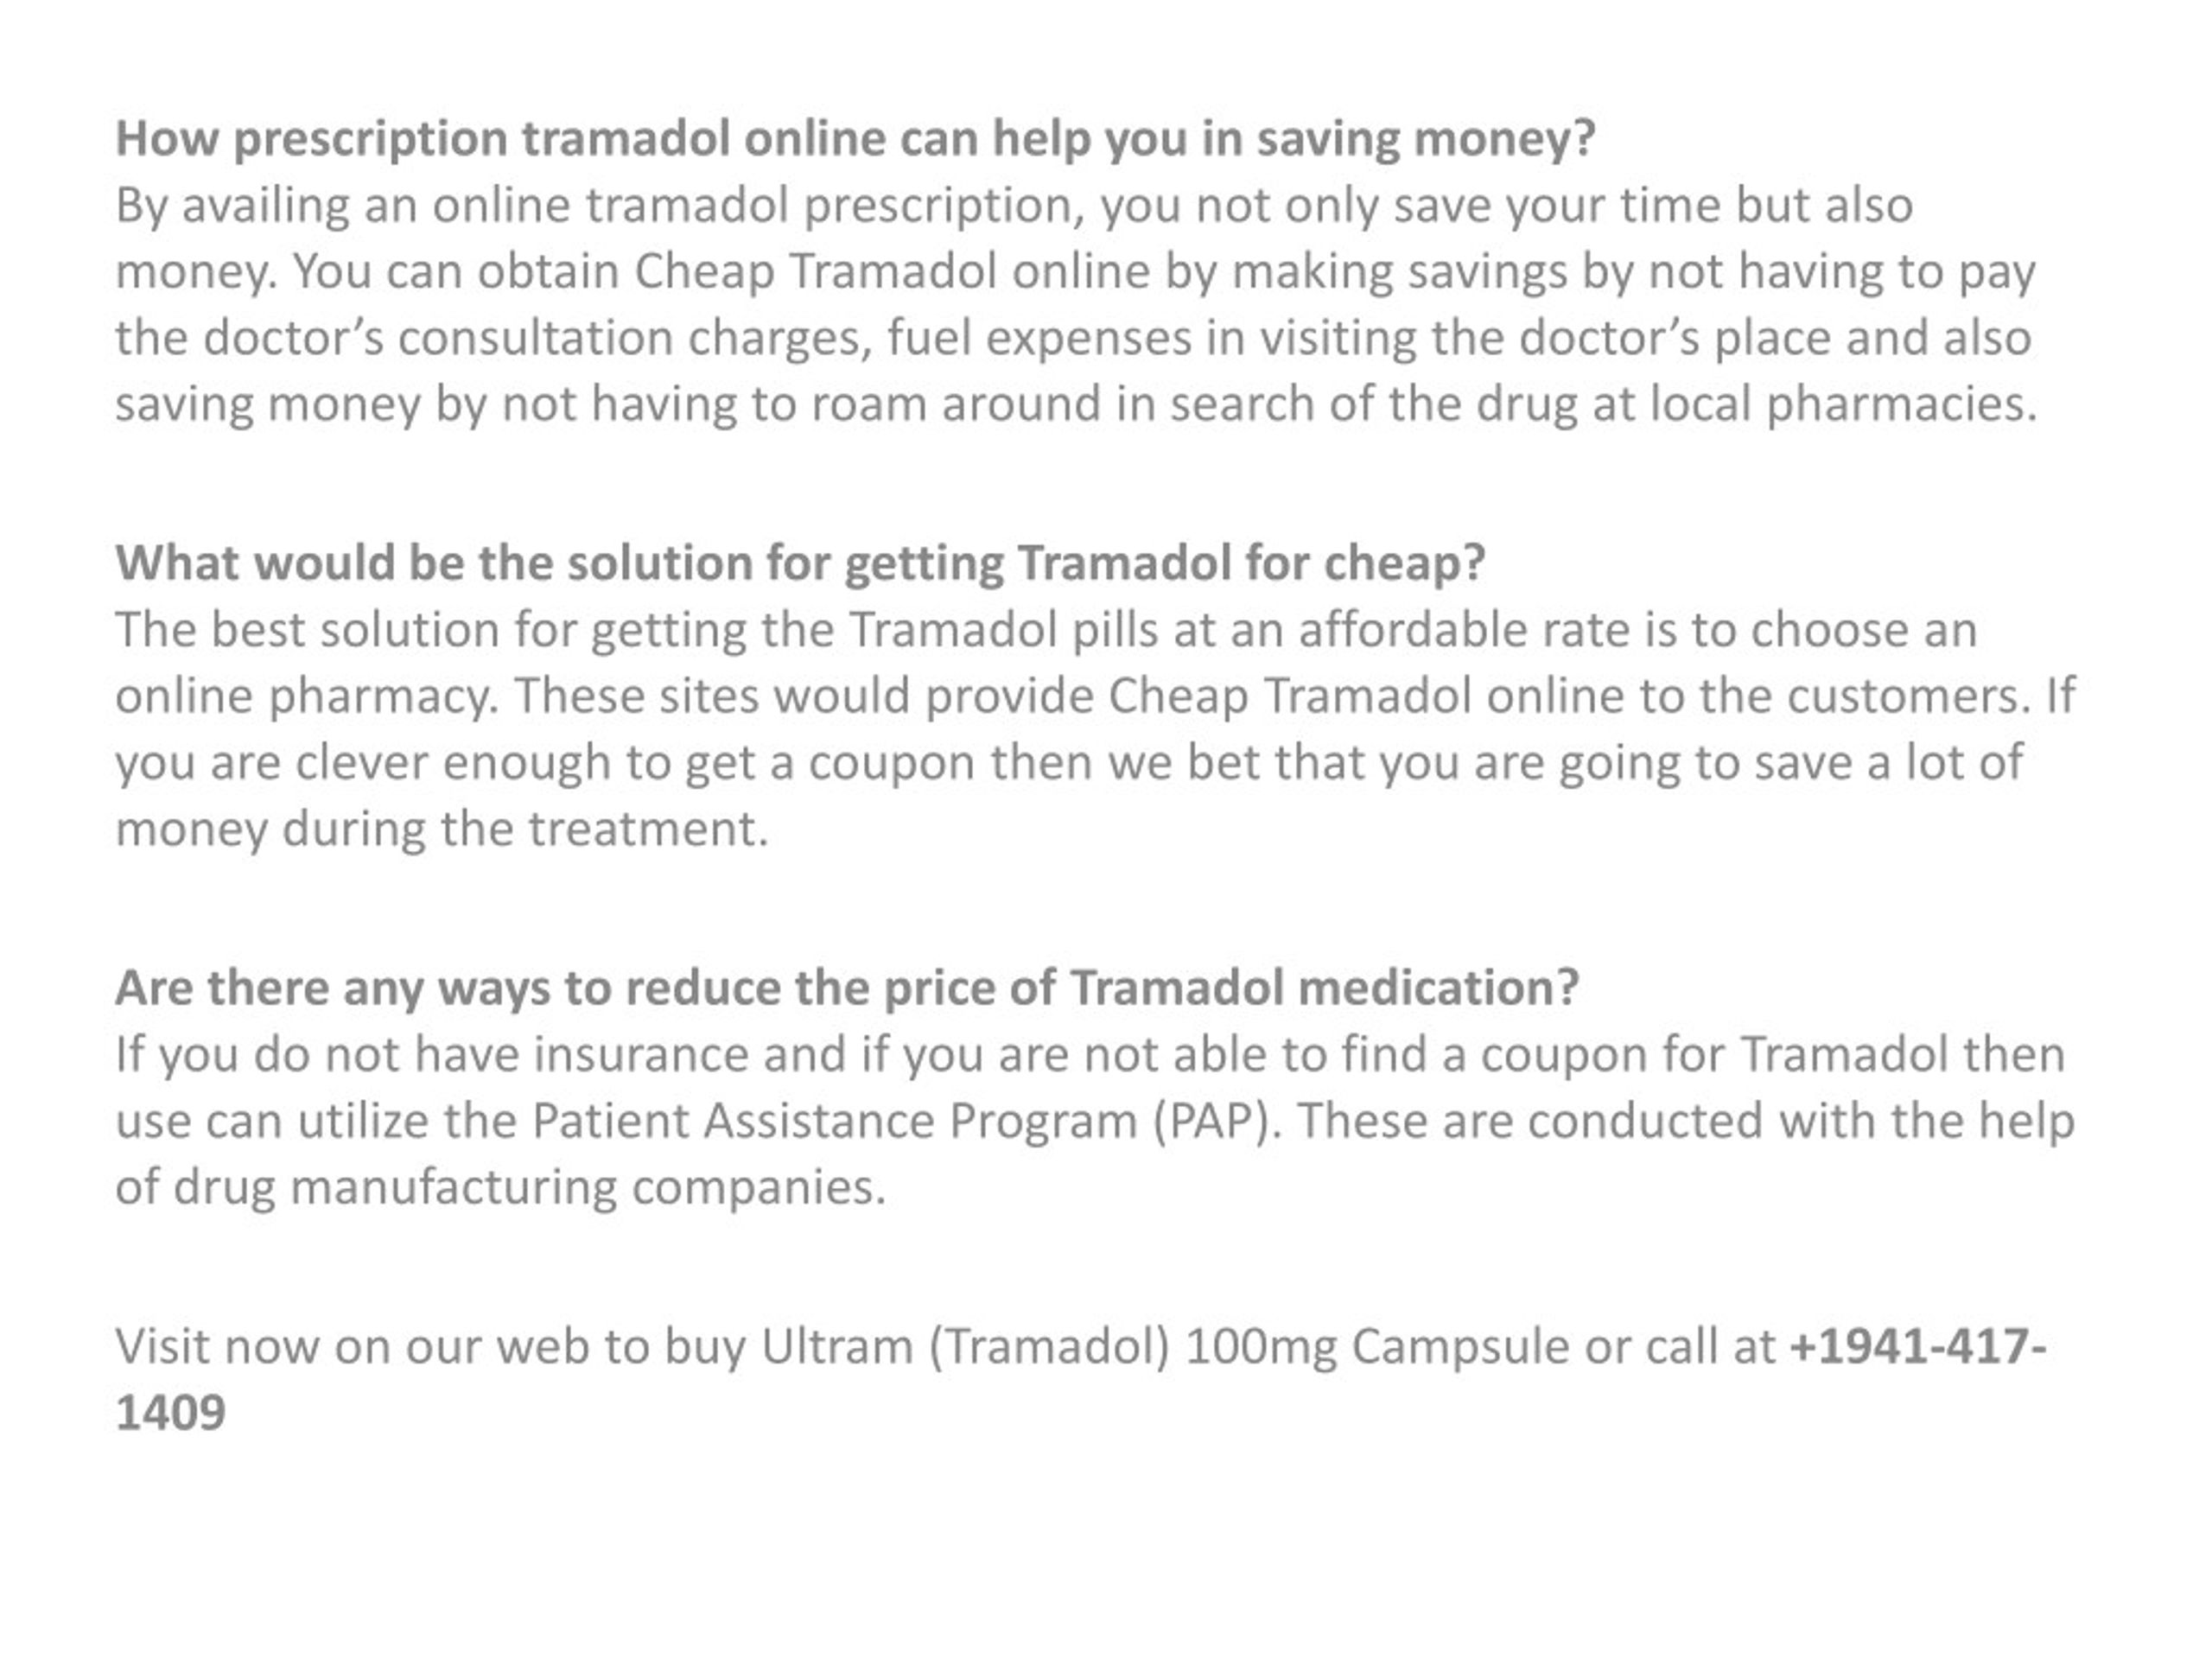 cost of ultram medication